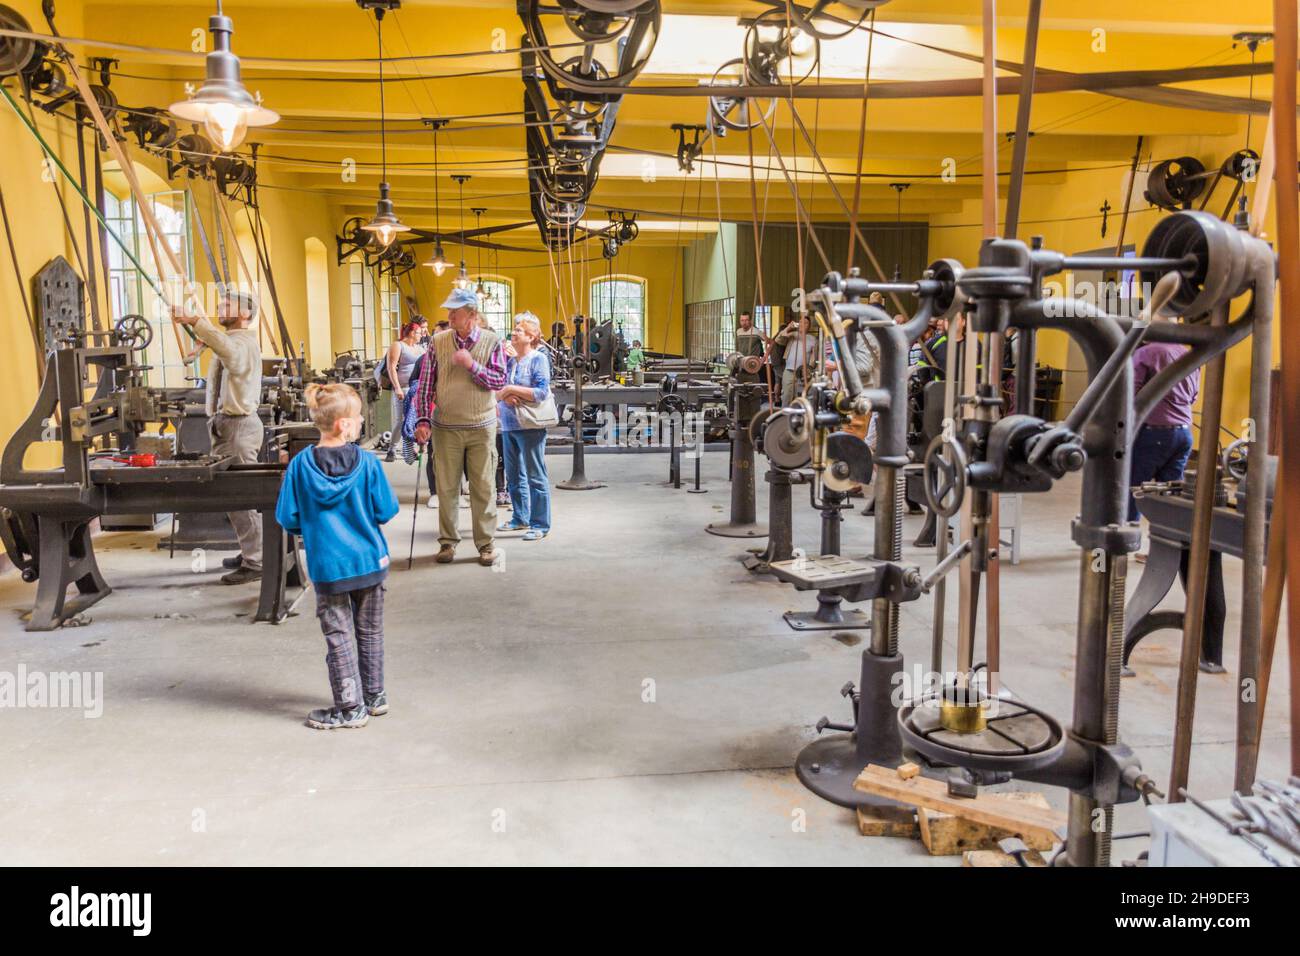 ZAMBERK, TCHÉQUIE - 15 SEPTEMBRE 2018 : usine du XIXe siècle équipée d'arbres de ligne et de courroies dans le Musée des anciennes machines et technologies (Muzeum St Banque D'Images